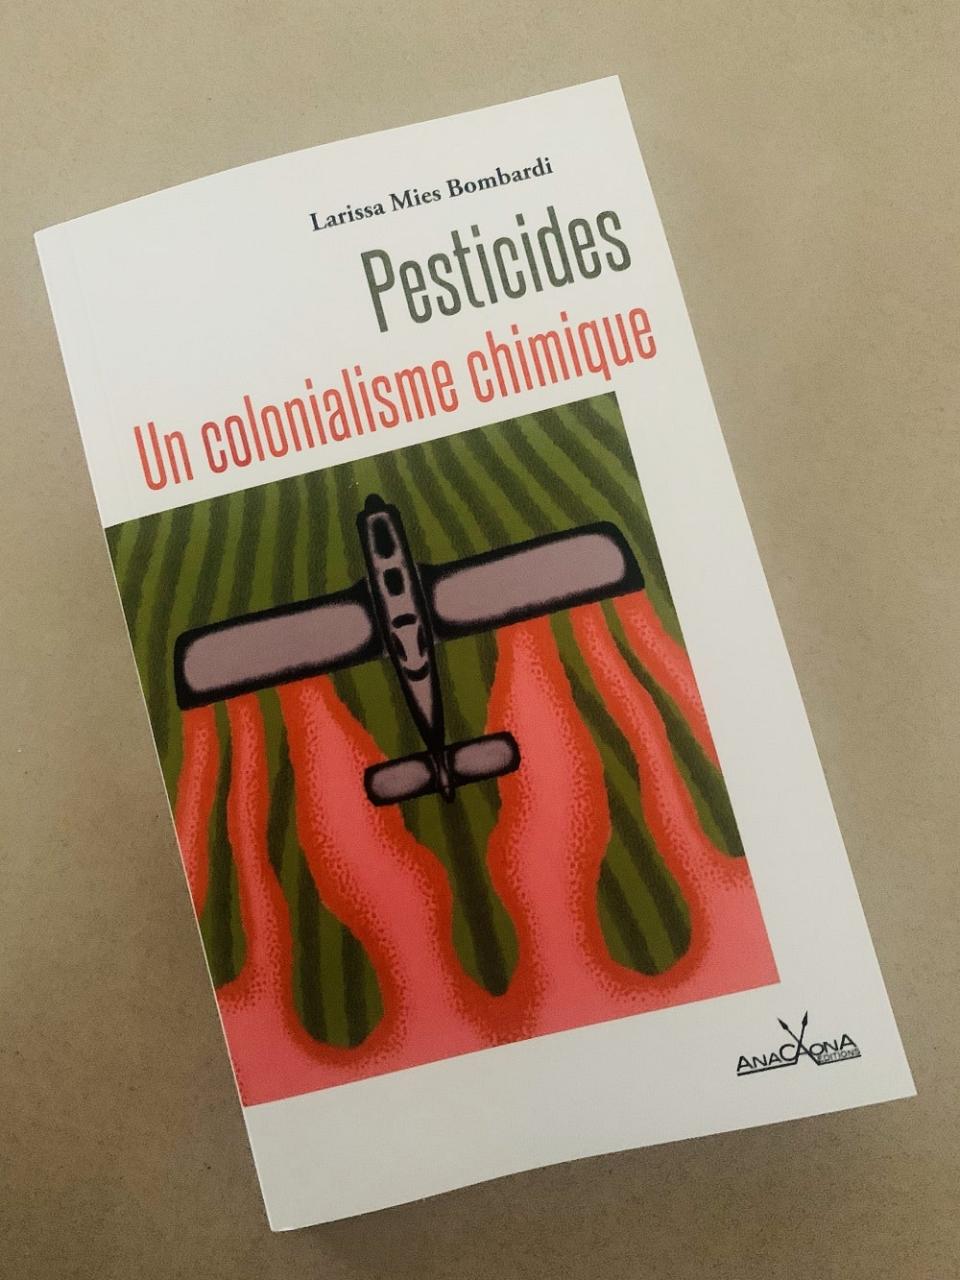 Couverture du livre Pesticides, un colonialisme chimique en photo posé sur une table